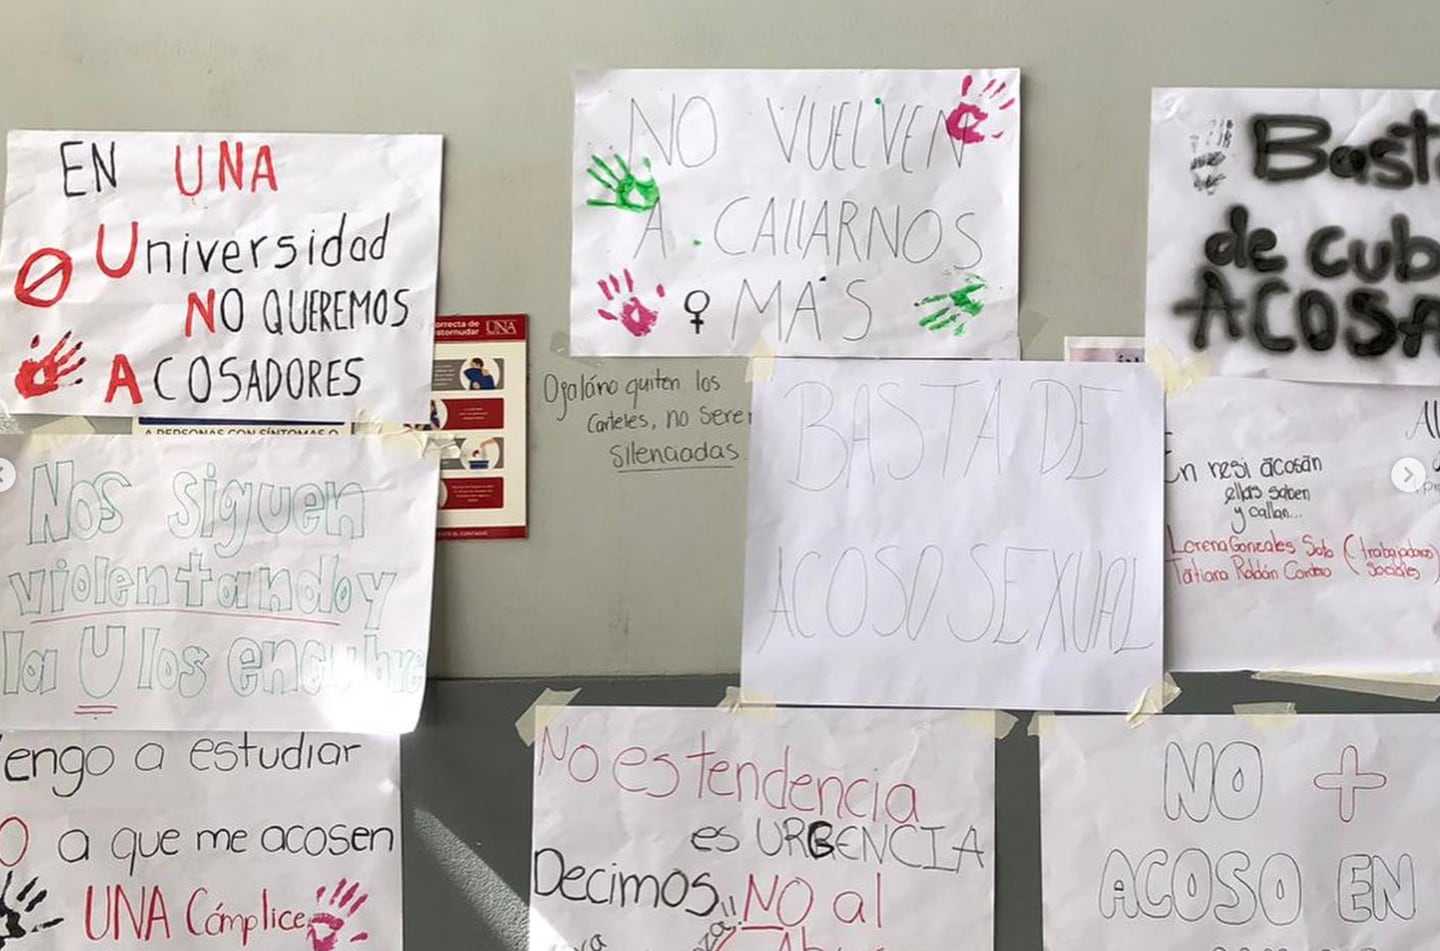 Estos fueron parte de los mensajes dejados en la Facultad de Ciencias Sociales de la UNA por los estudiantes durante una manifestación este7 de setiembre. Fotografía: Cortesía.